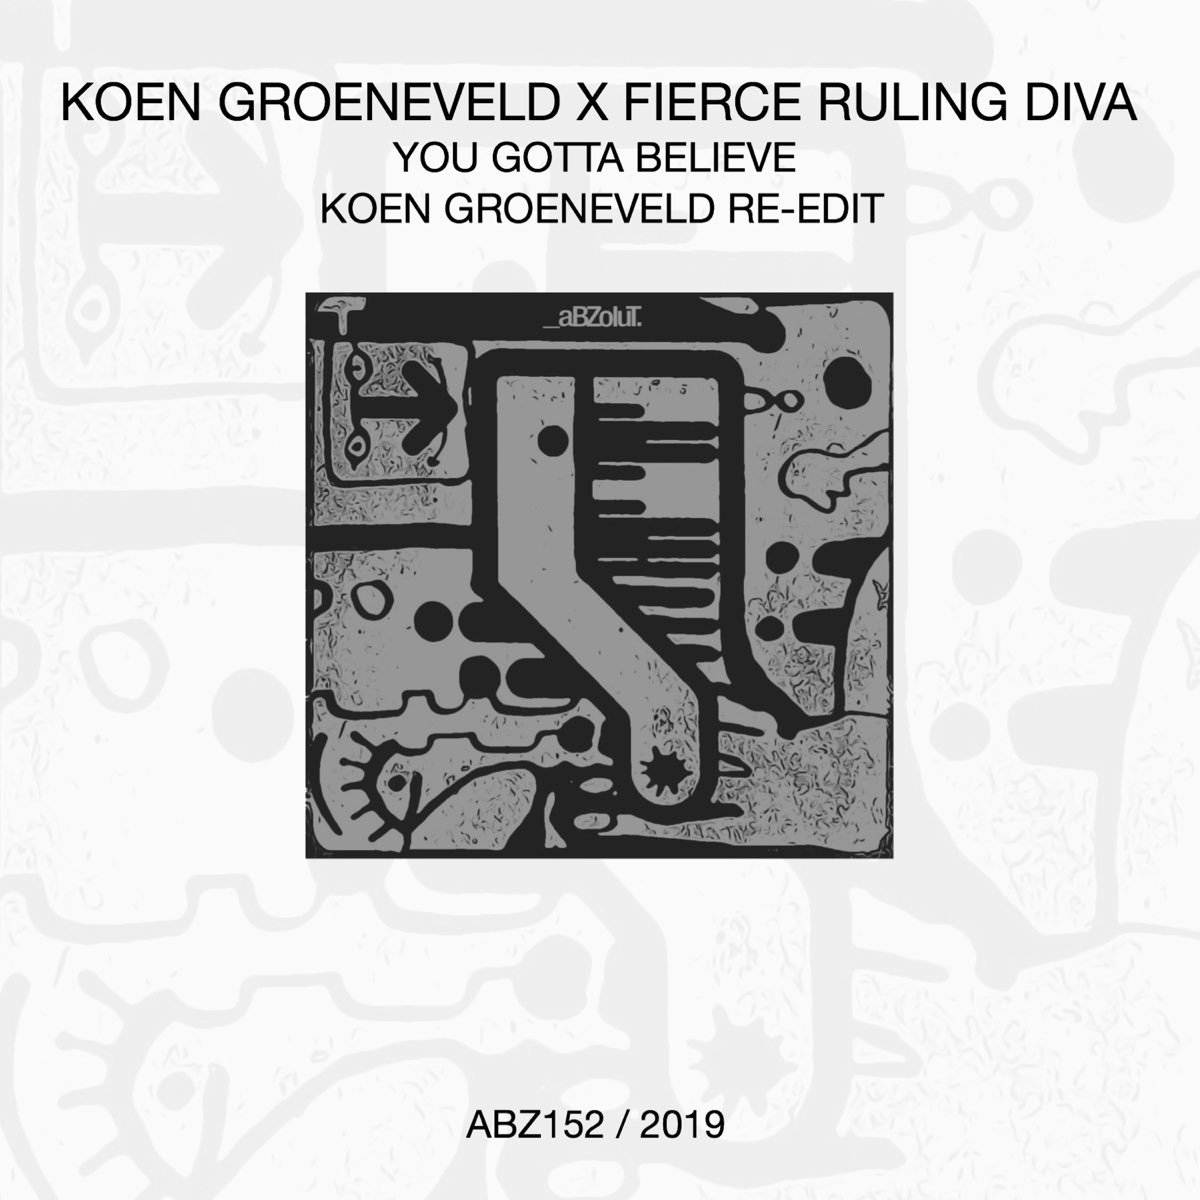 You Gotta Believe (Koen Groeneveld Re-Edit) - Single by Koen Groeneveld & Fierce  Ruling Diva on Apple Music